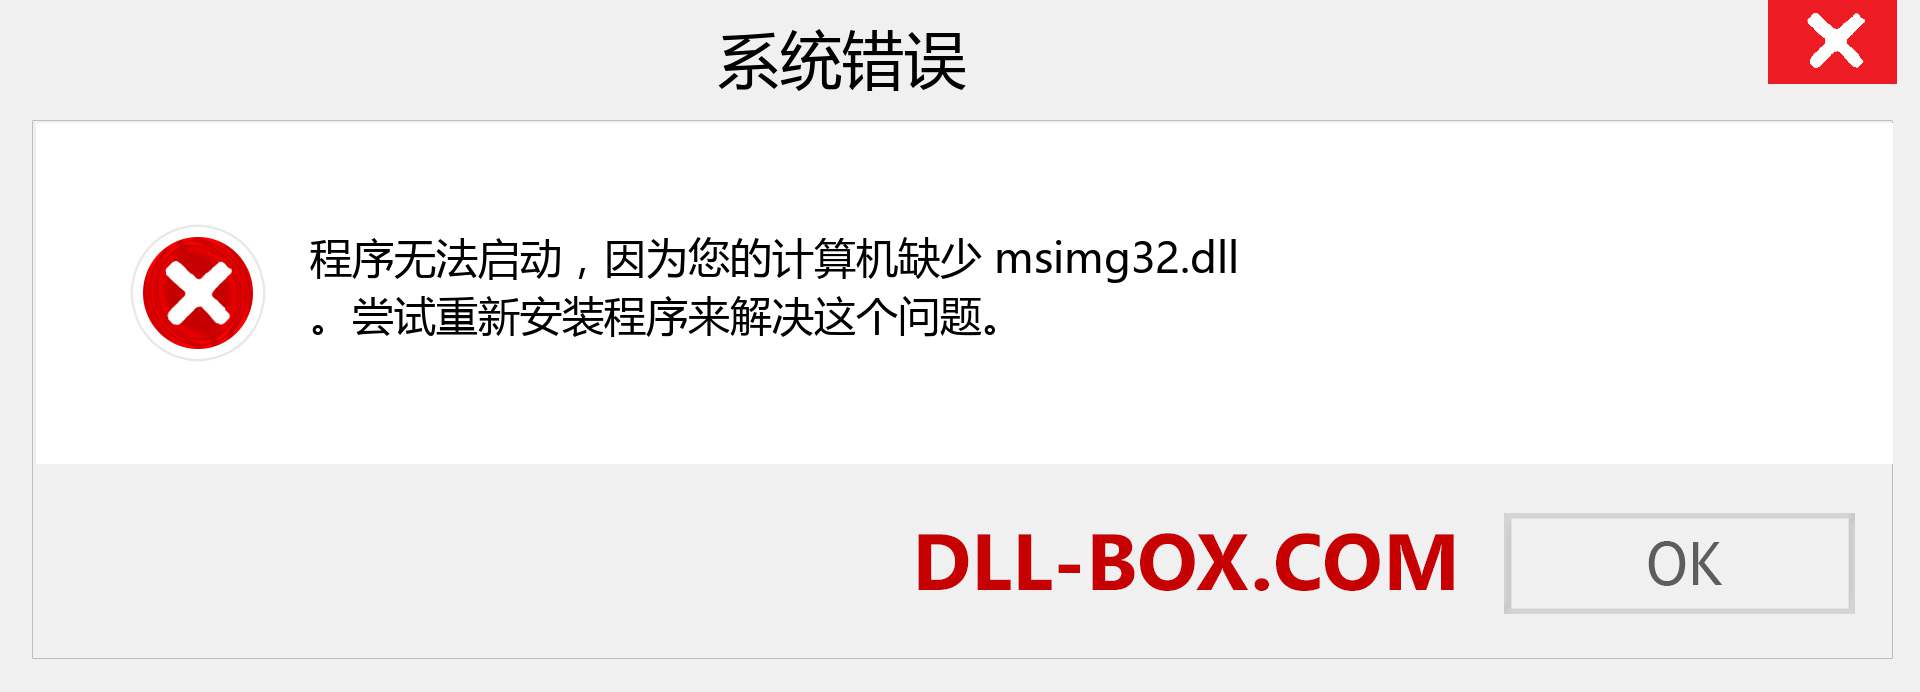 msimg32.dll 文件丢失？。 适用于 Windows 7、8、10 的下载 - 修复 Windows、照片、图像上的 msimg32 dll 丢失错误